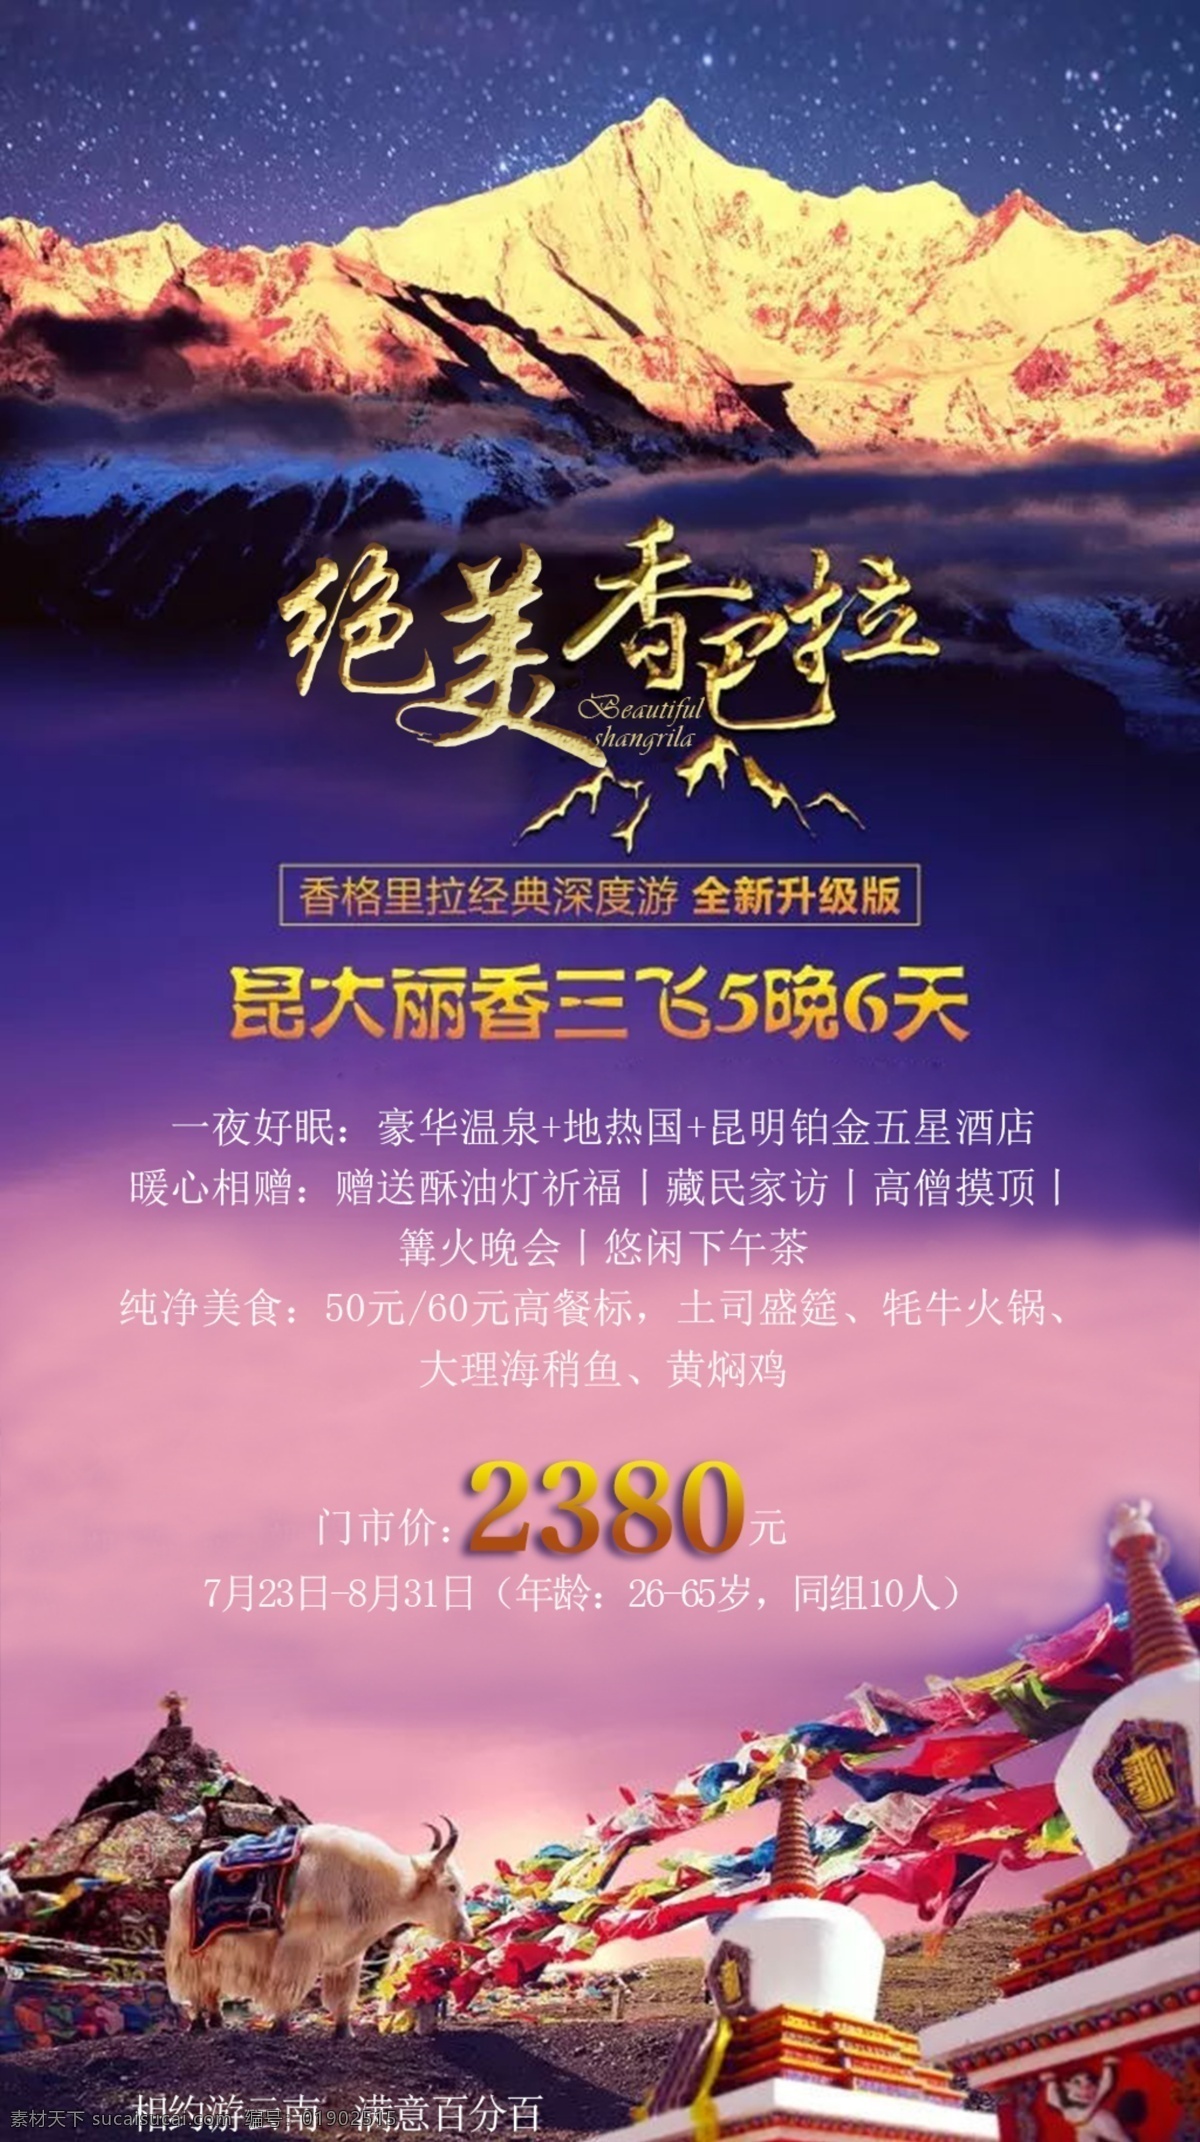 寻 梦 香 巴拉 看 图 王 旅游海报 psd素材 旅游 云南 香格里拉 粉色